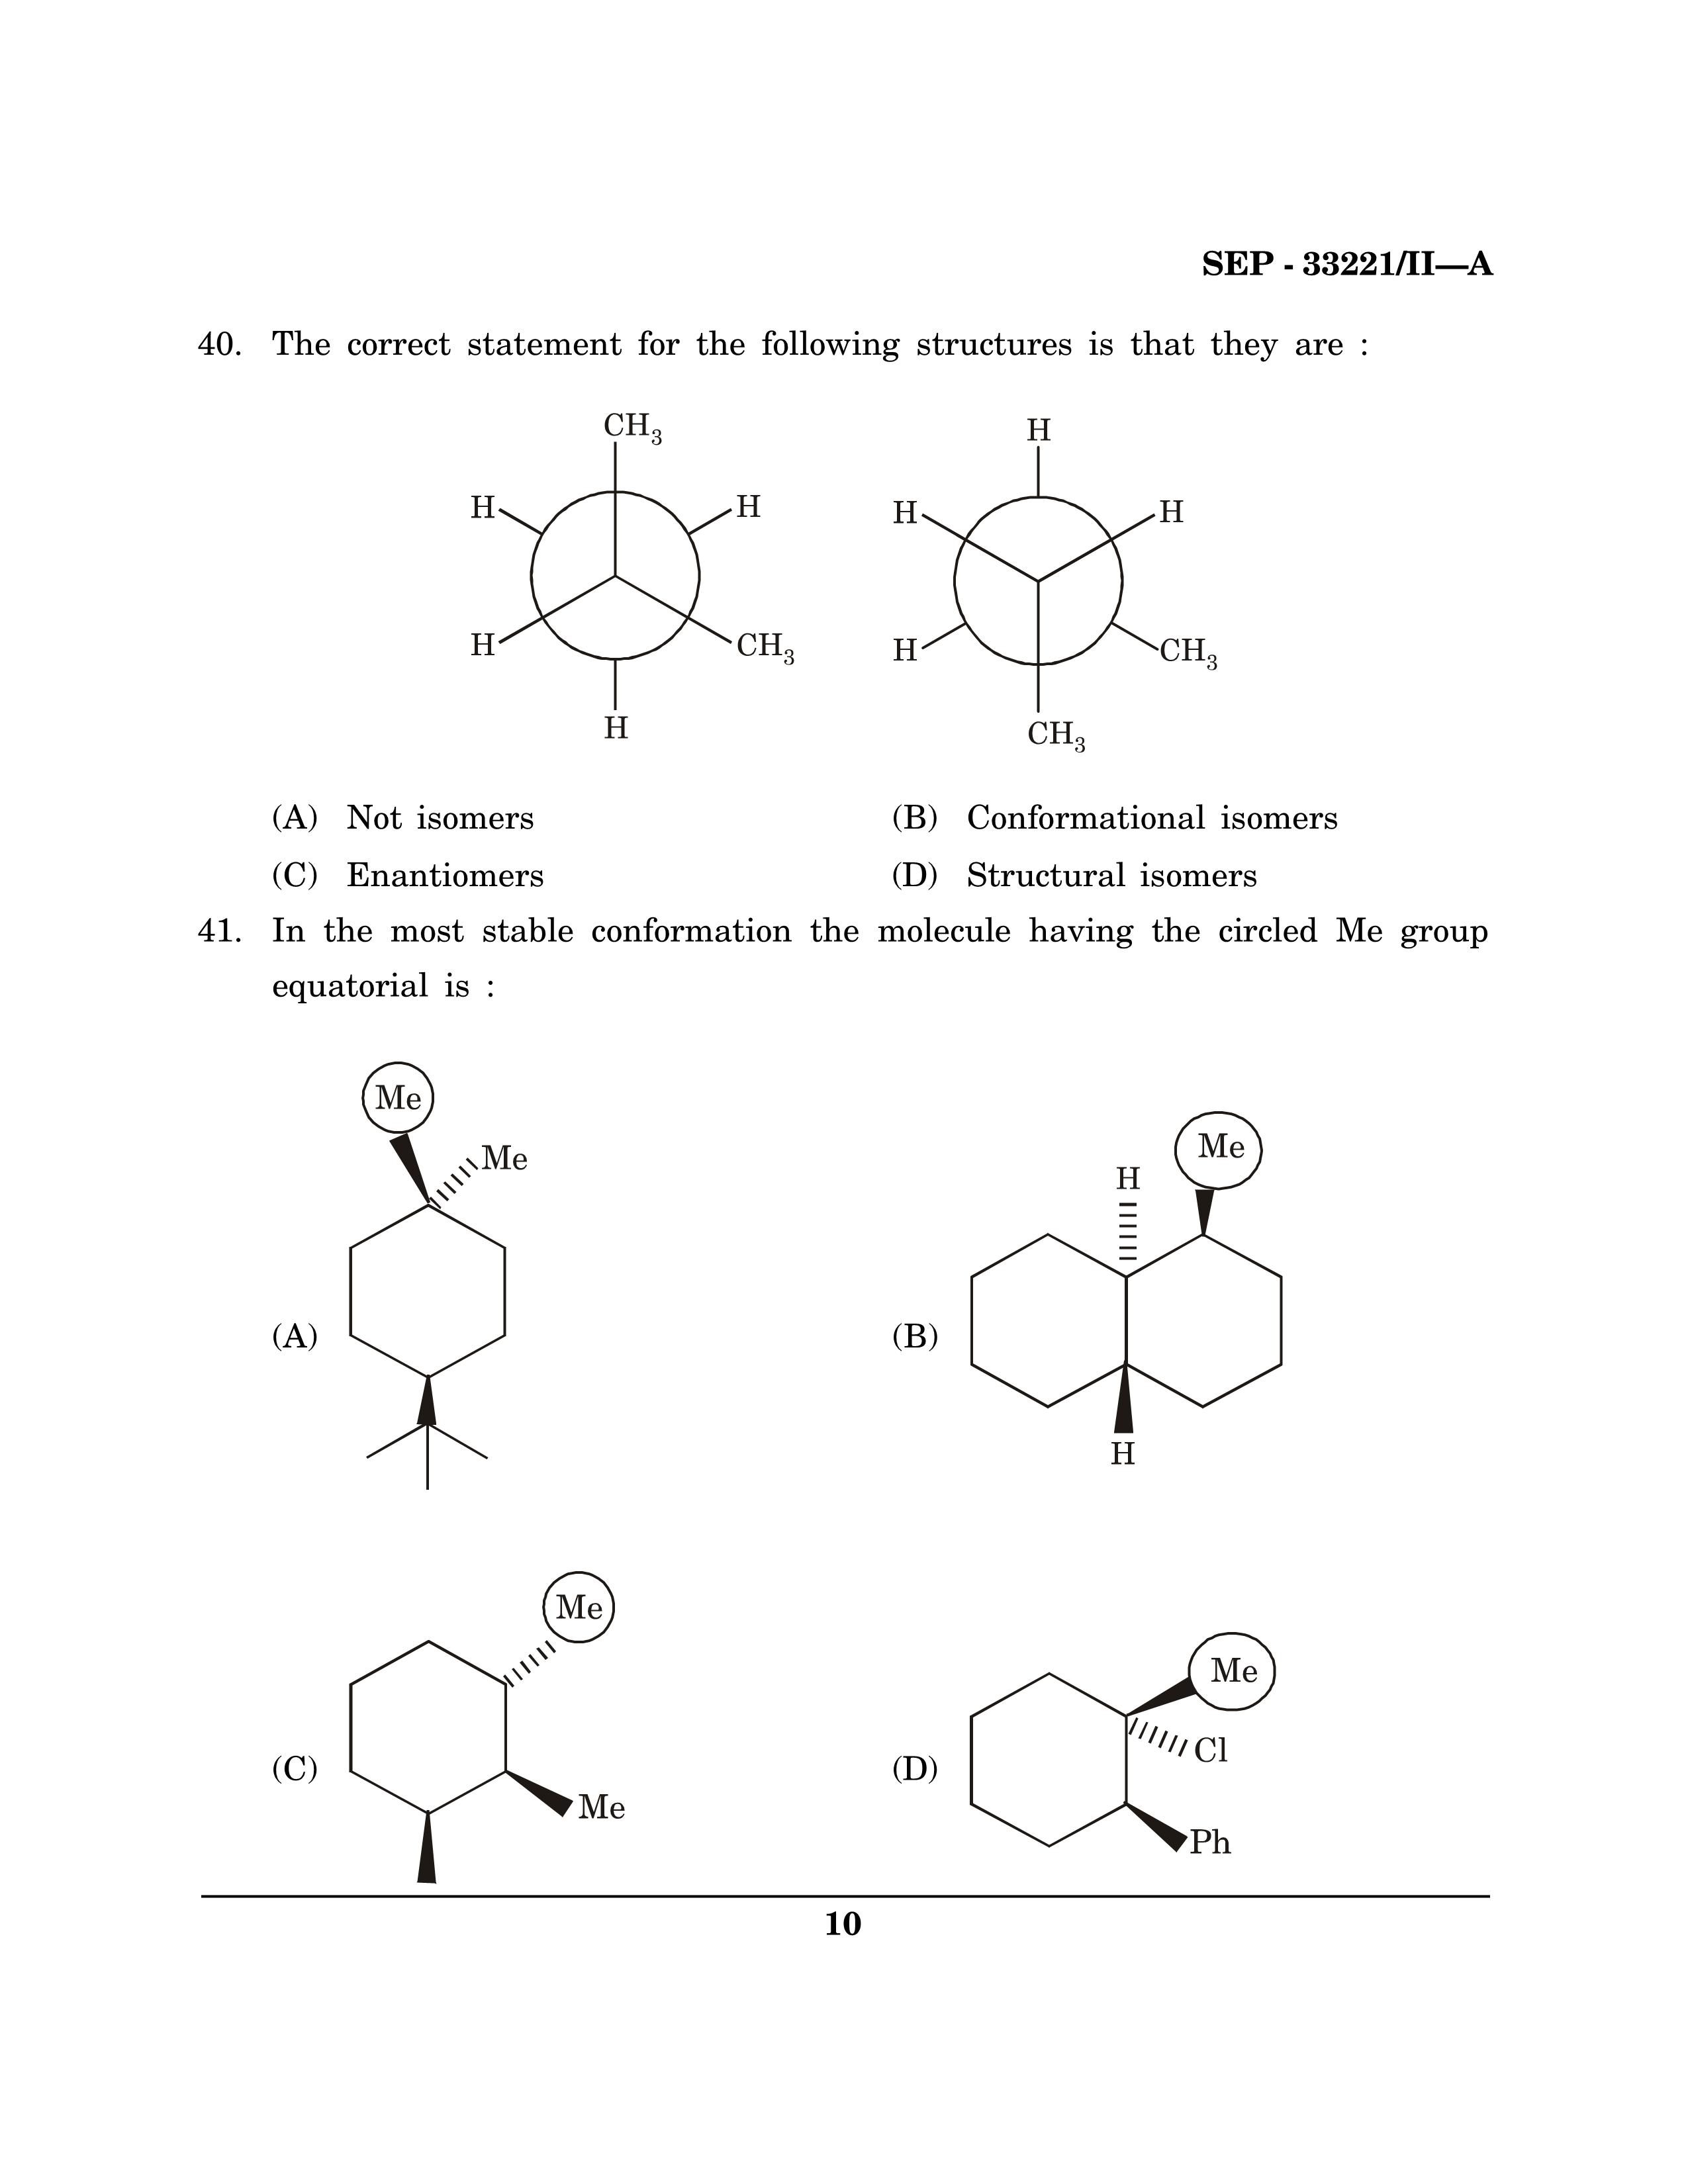 Maharashtra SET Chemical Sciences Exam Question Paper September 2021 9